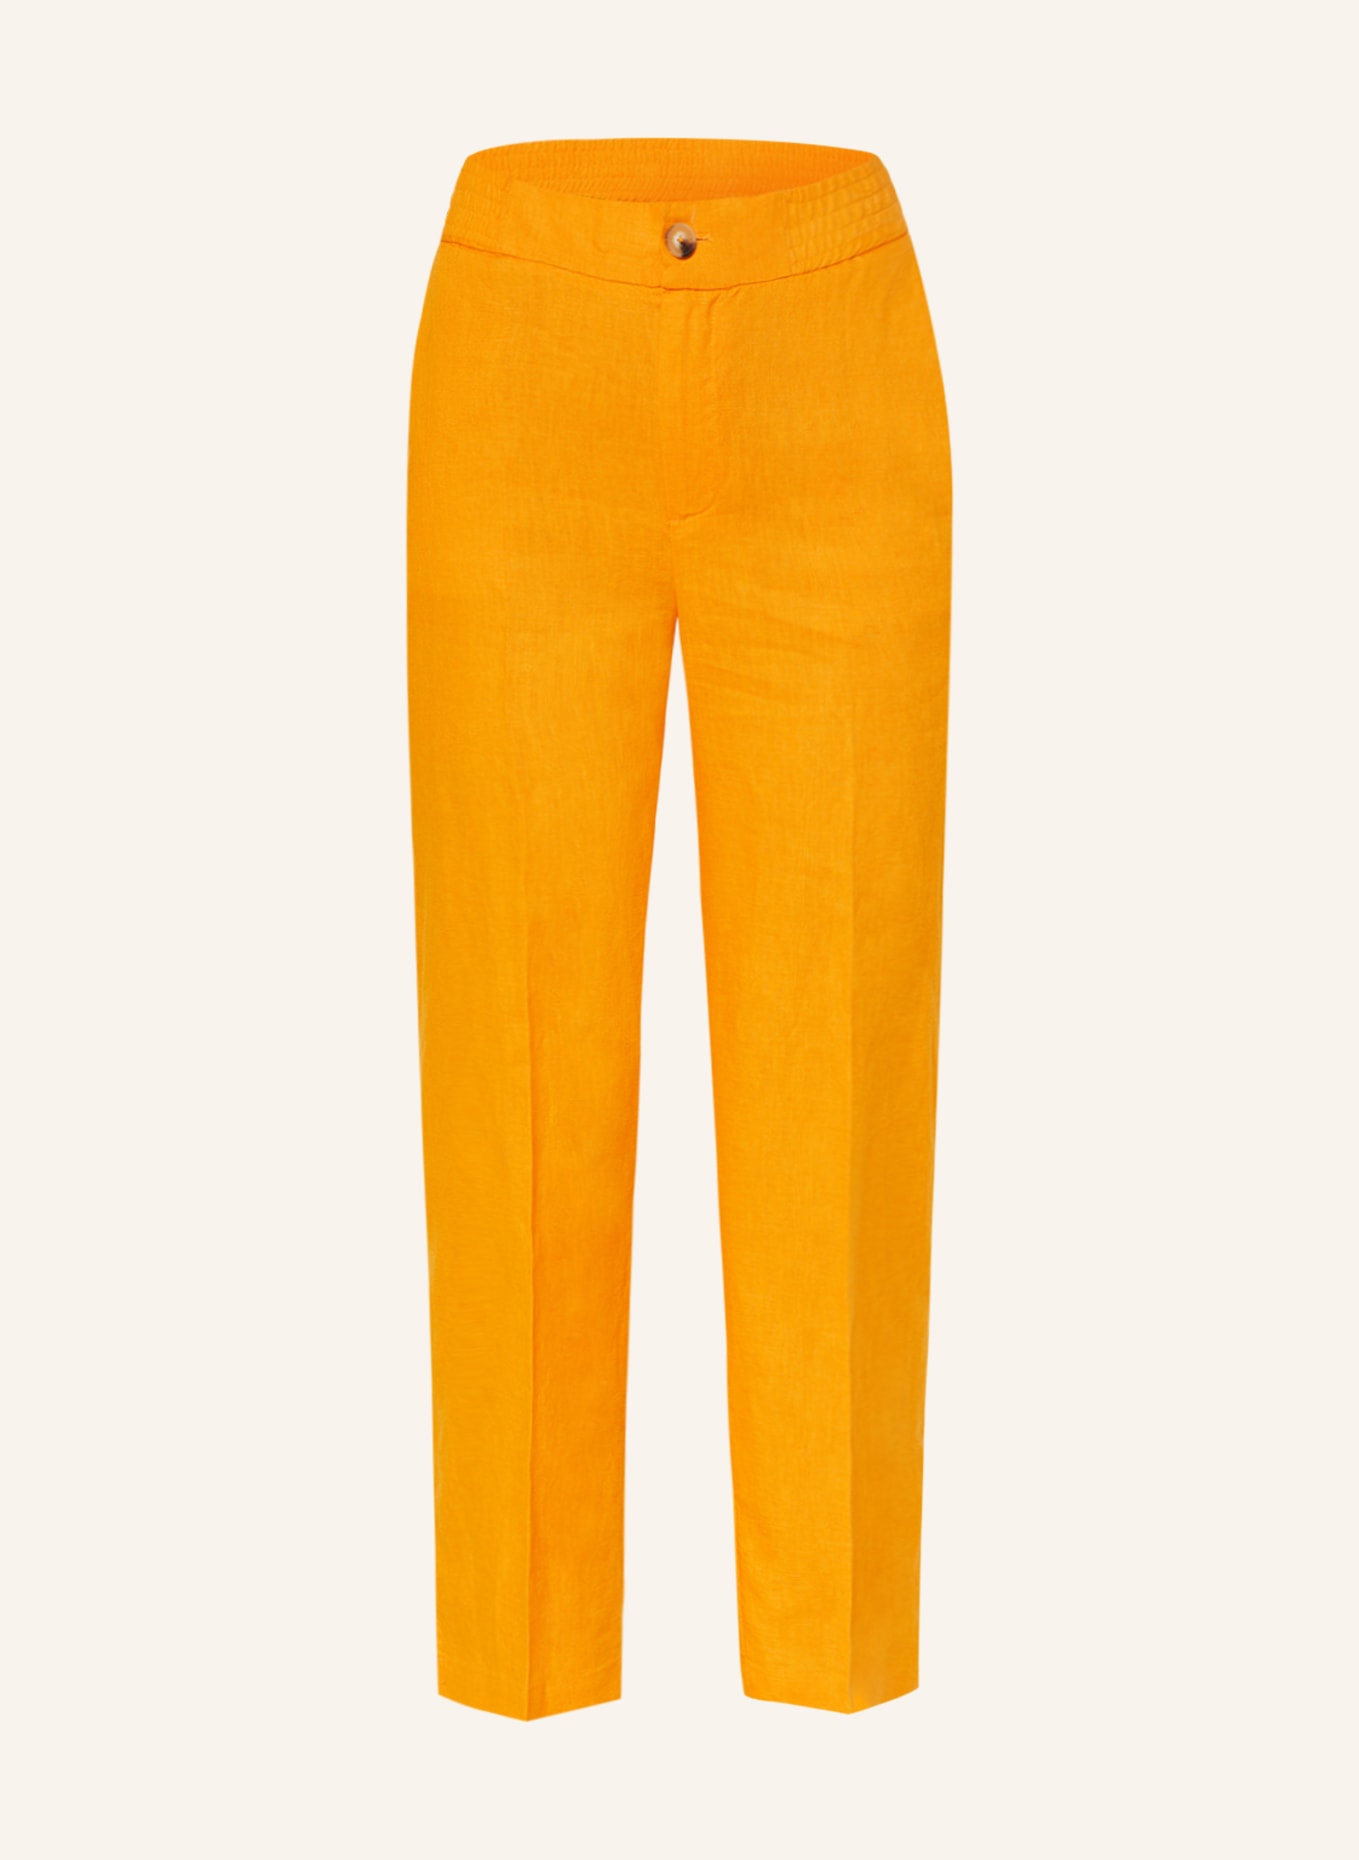 oui Linen trousers, Color: ORANGE (Image 1)